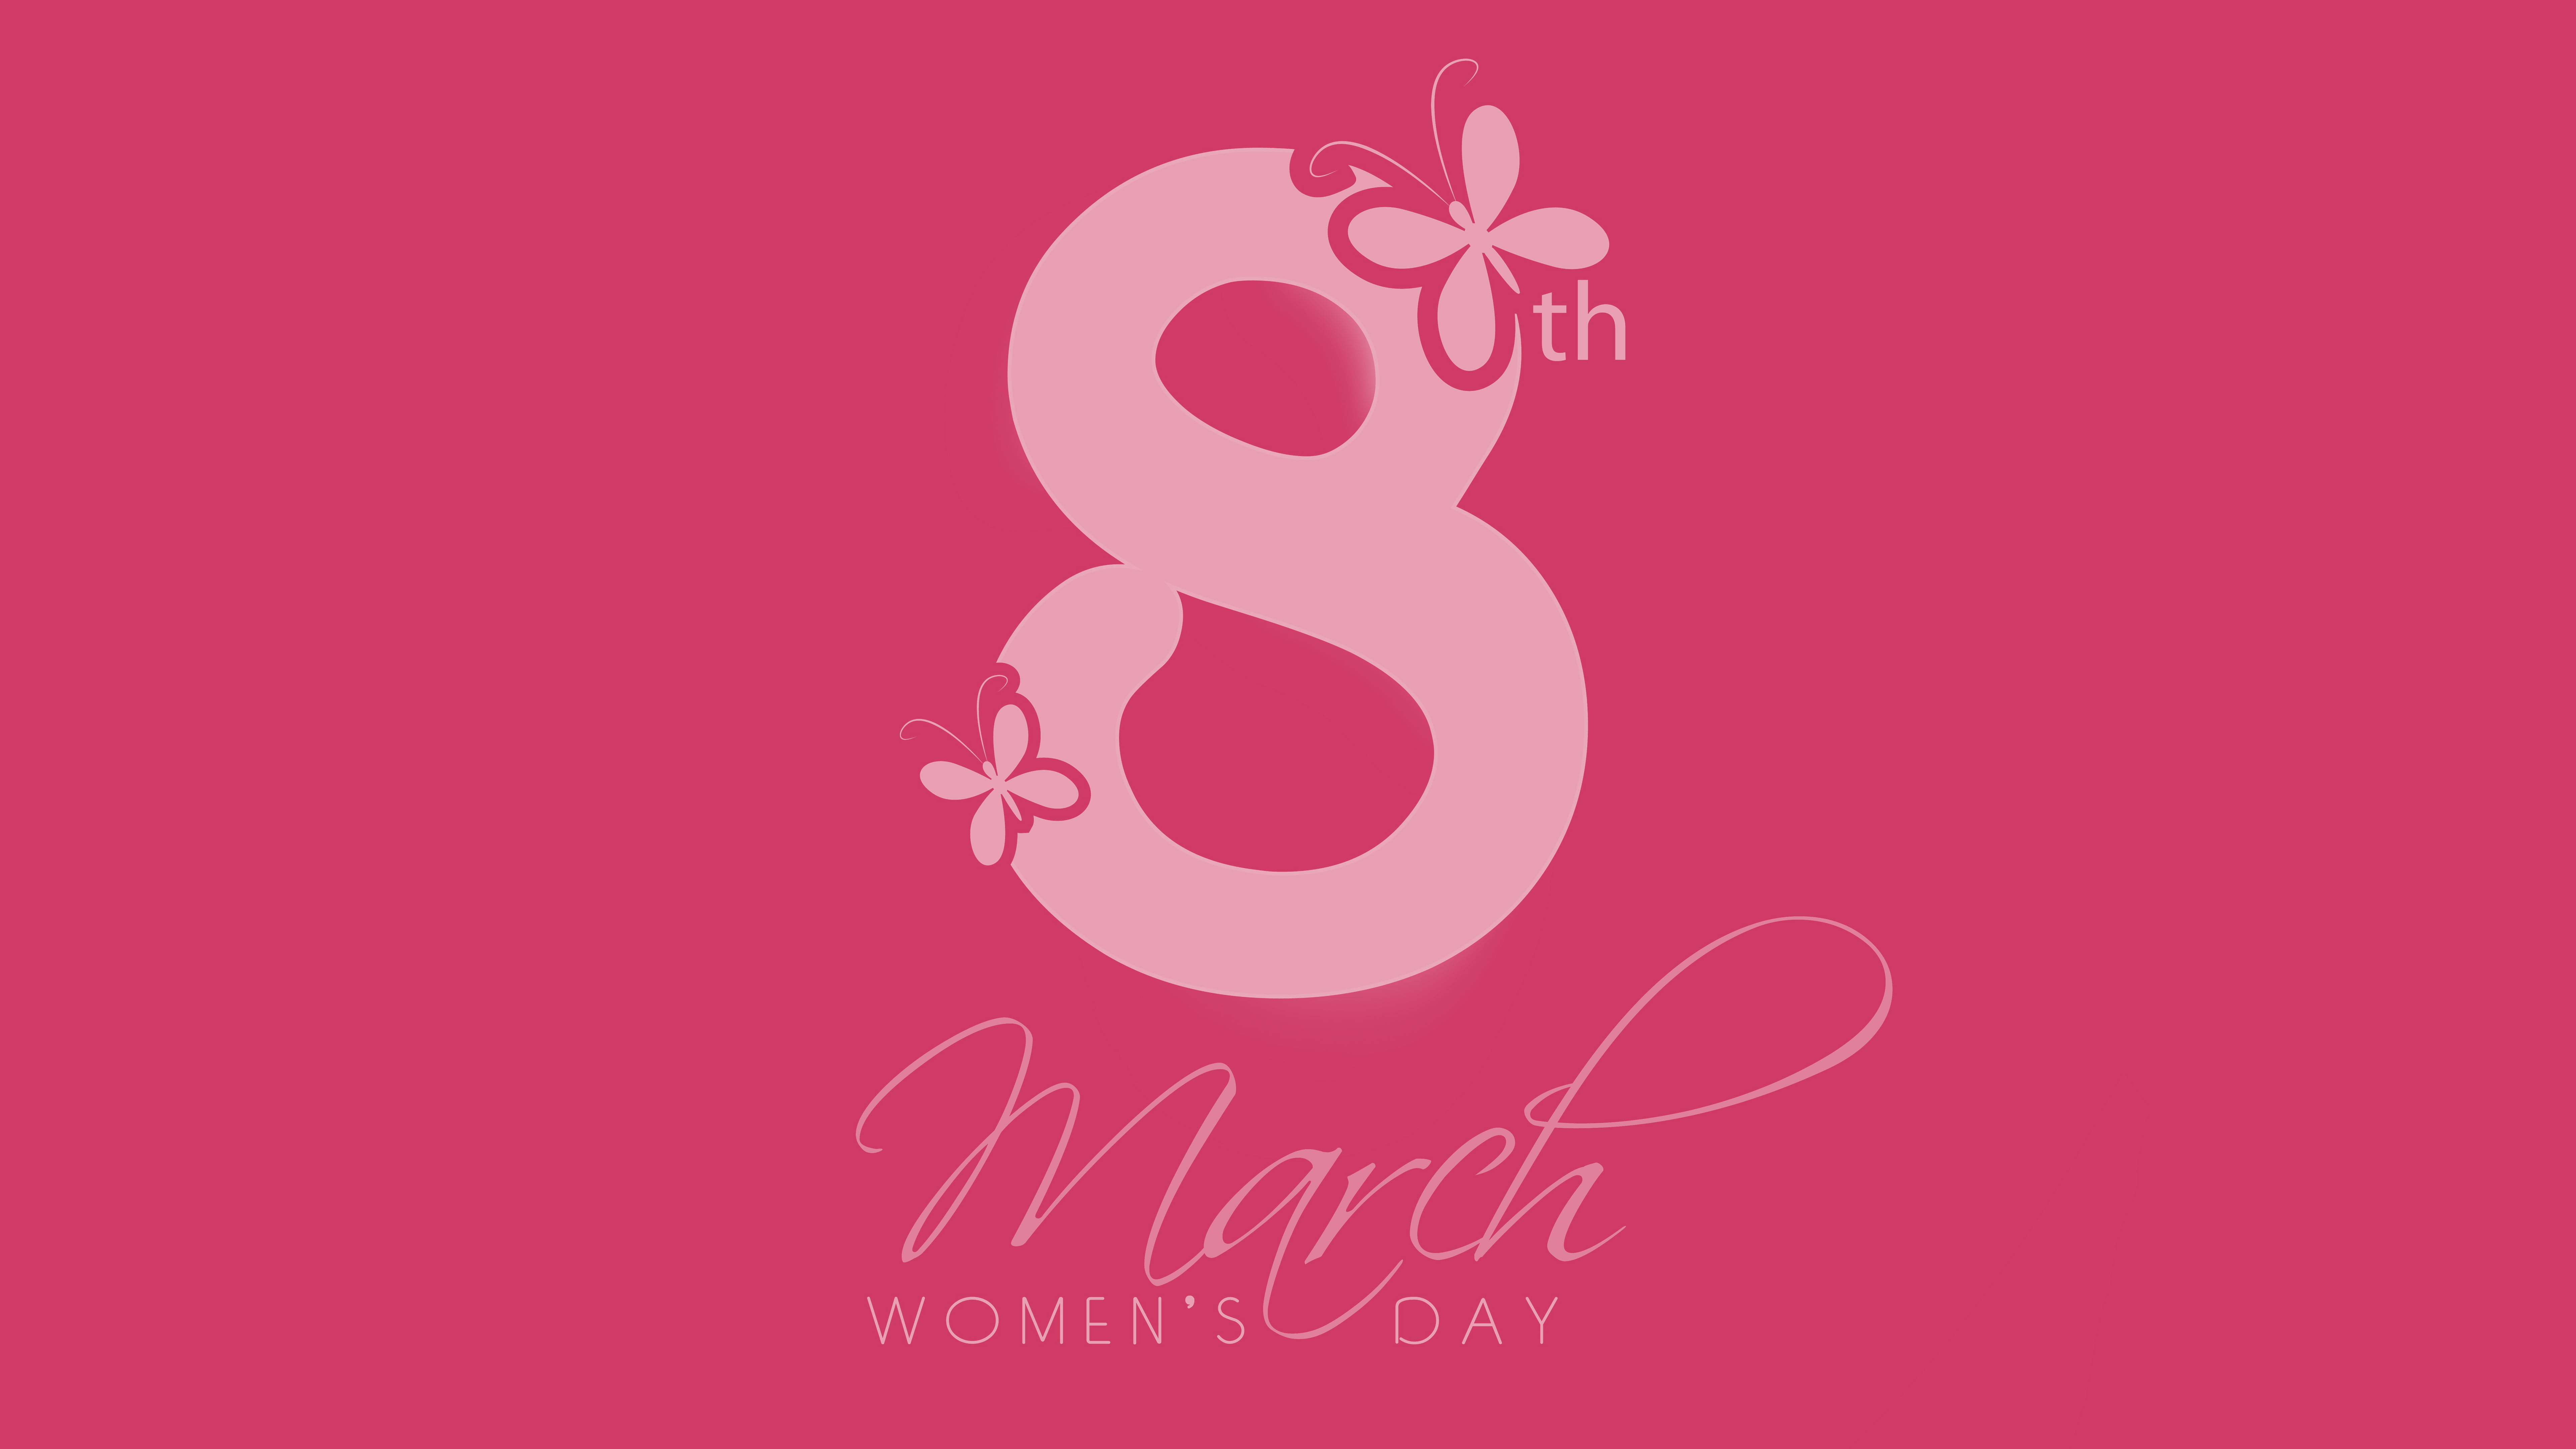 8 March Women's Day - HD Wallpaper 